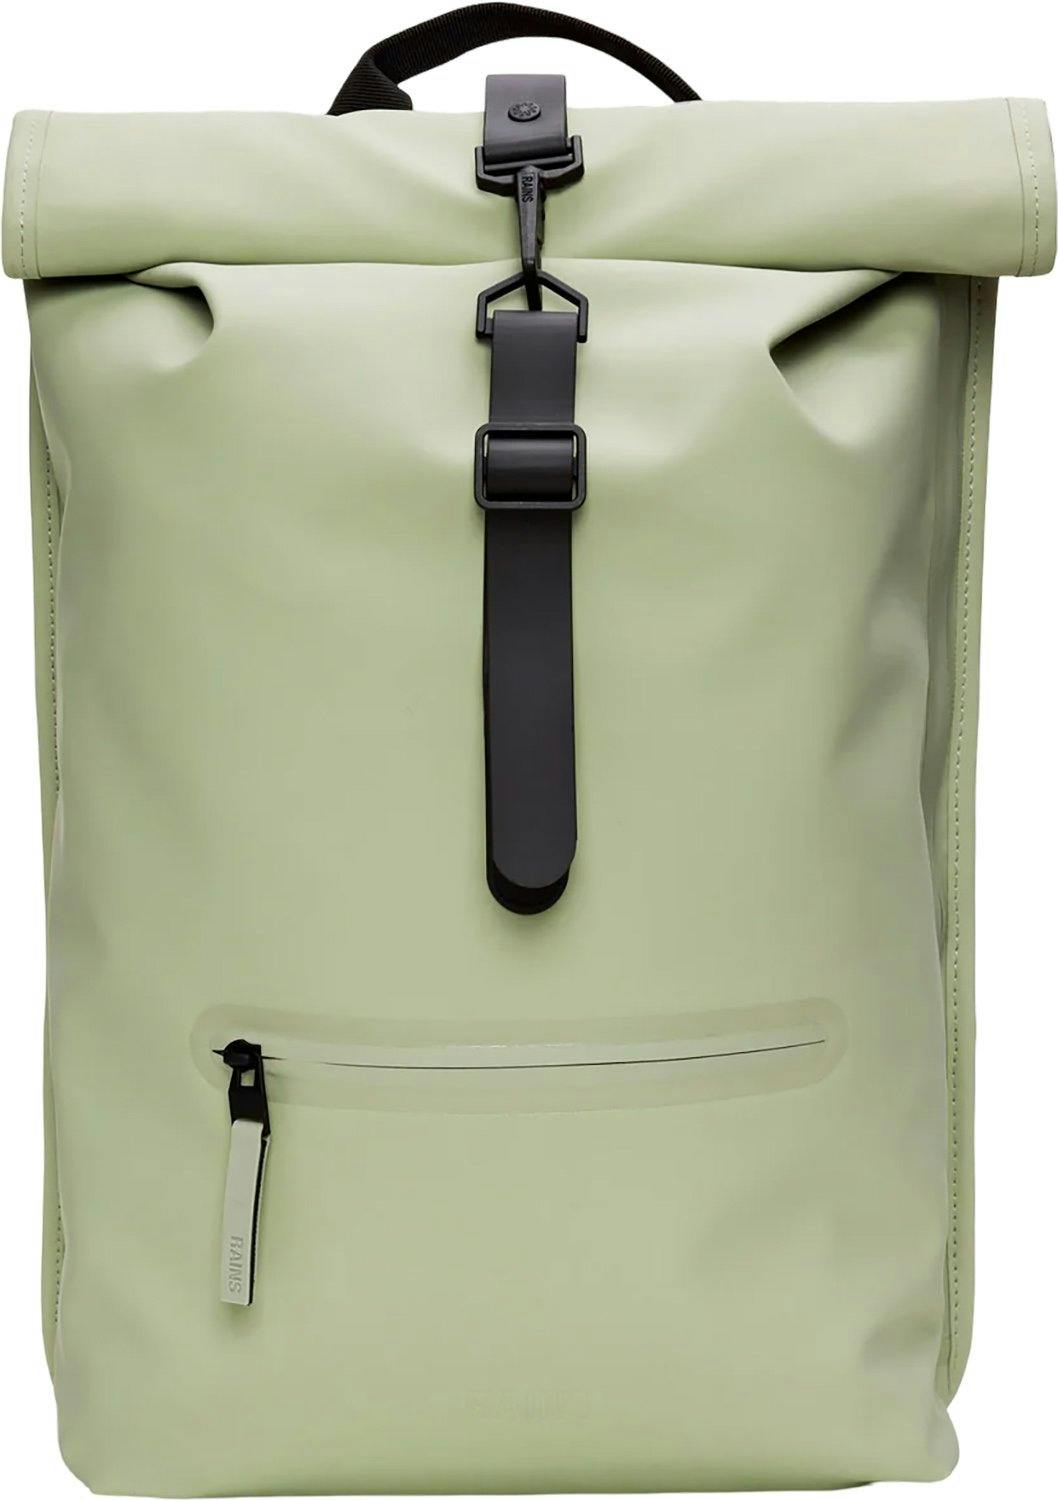 Product image for Rolltop Rucksack Bag 13L